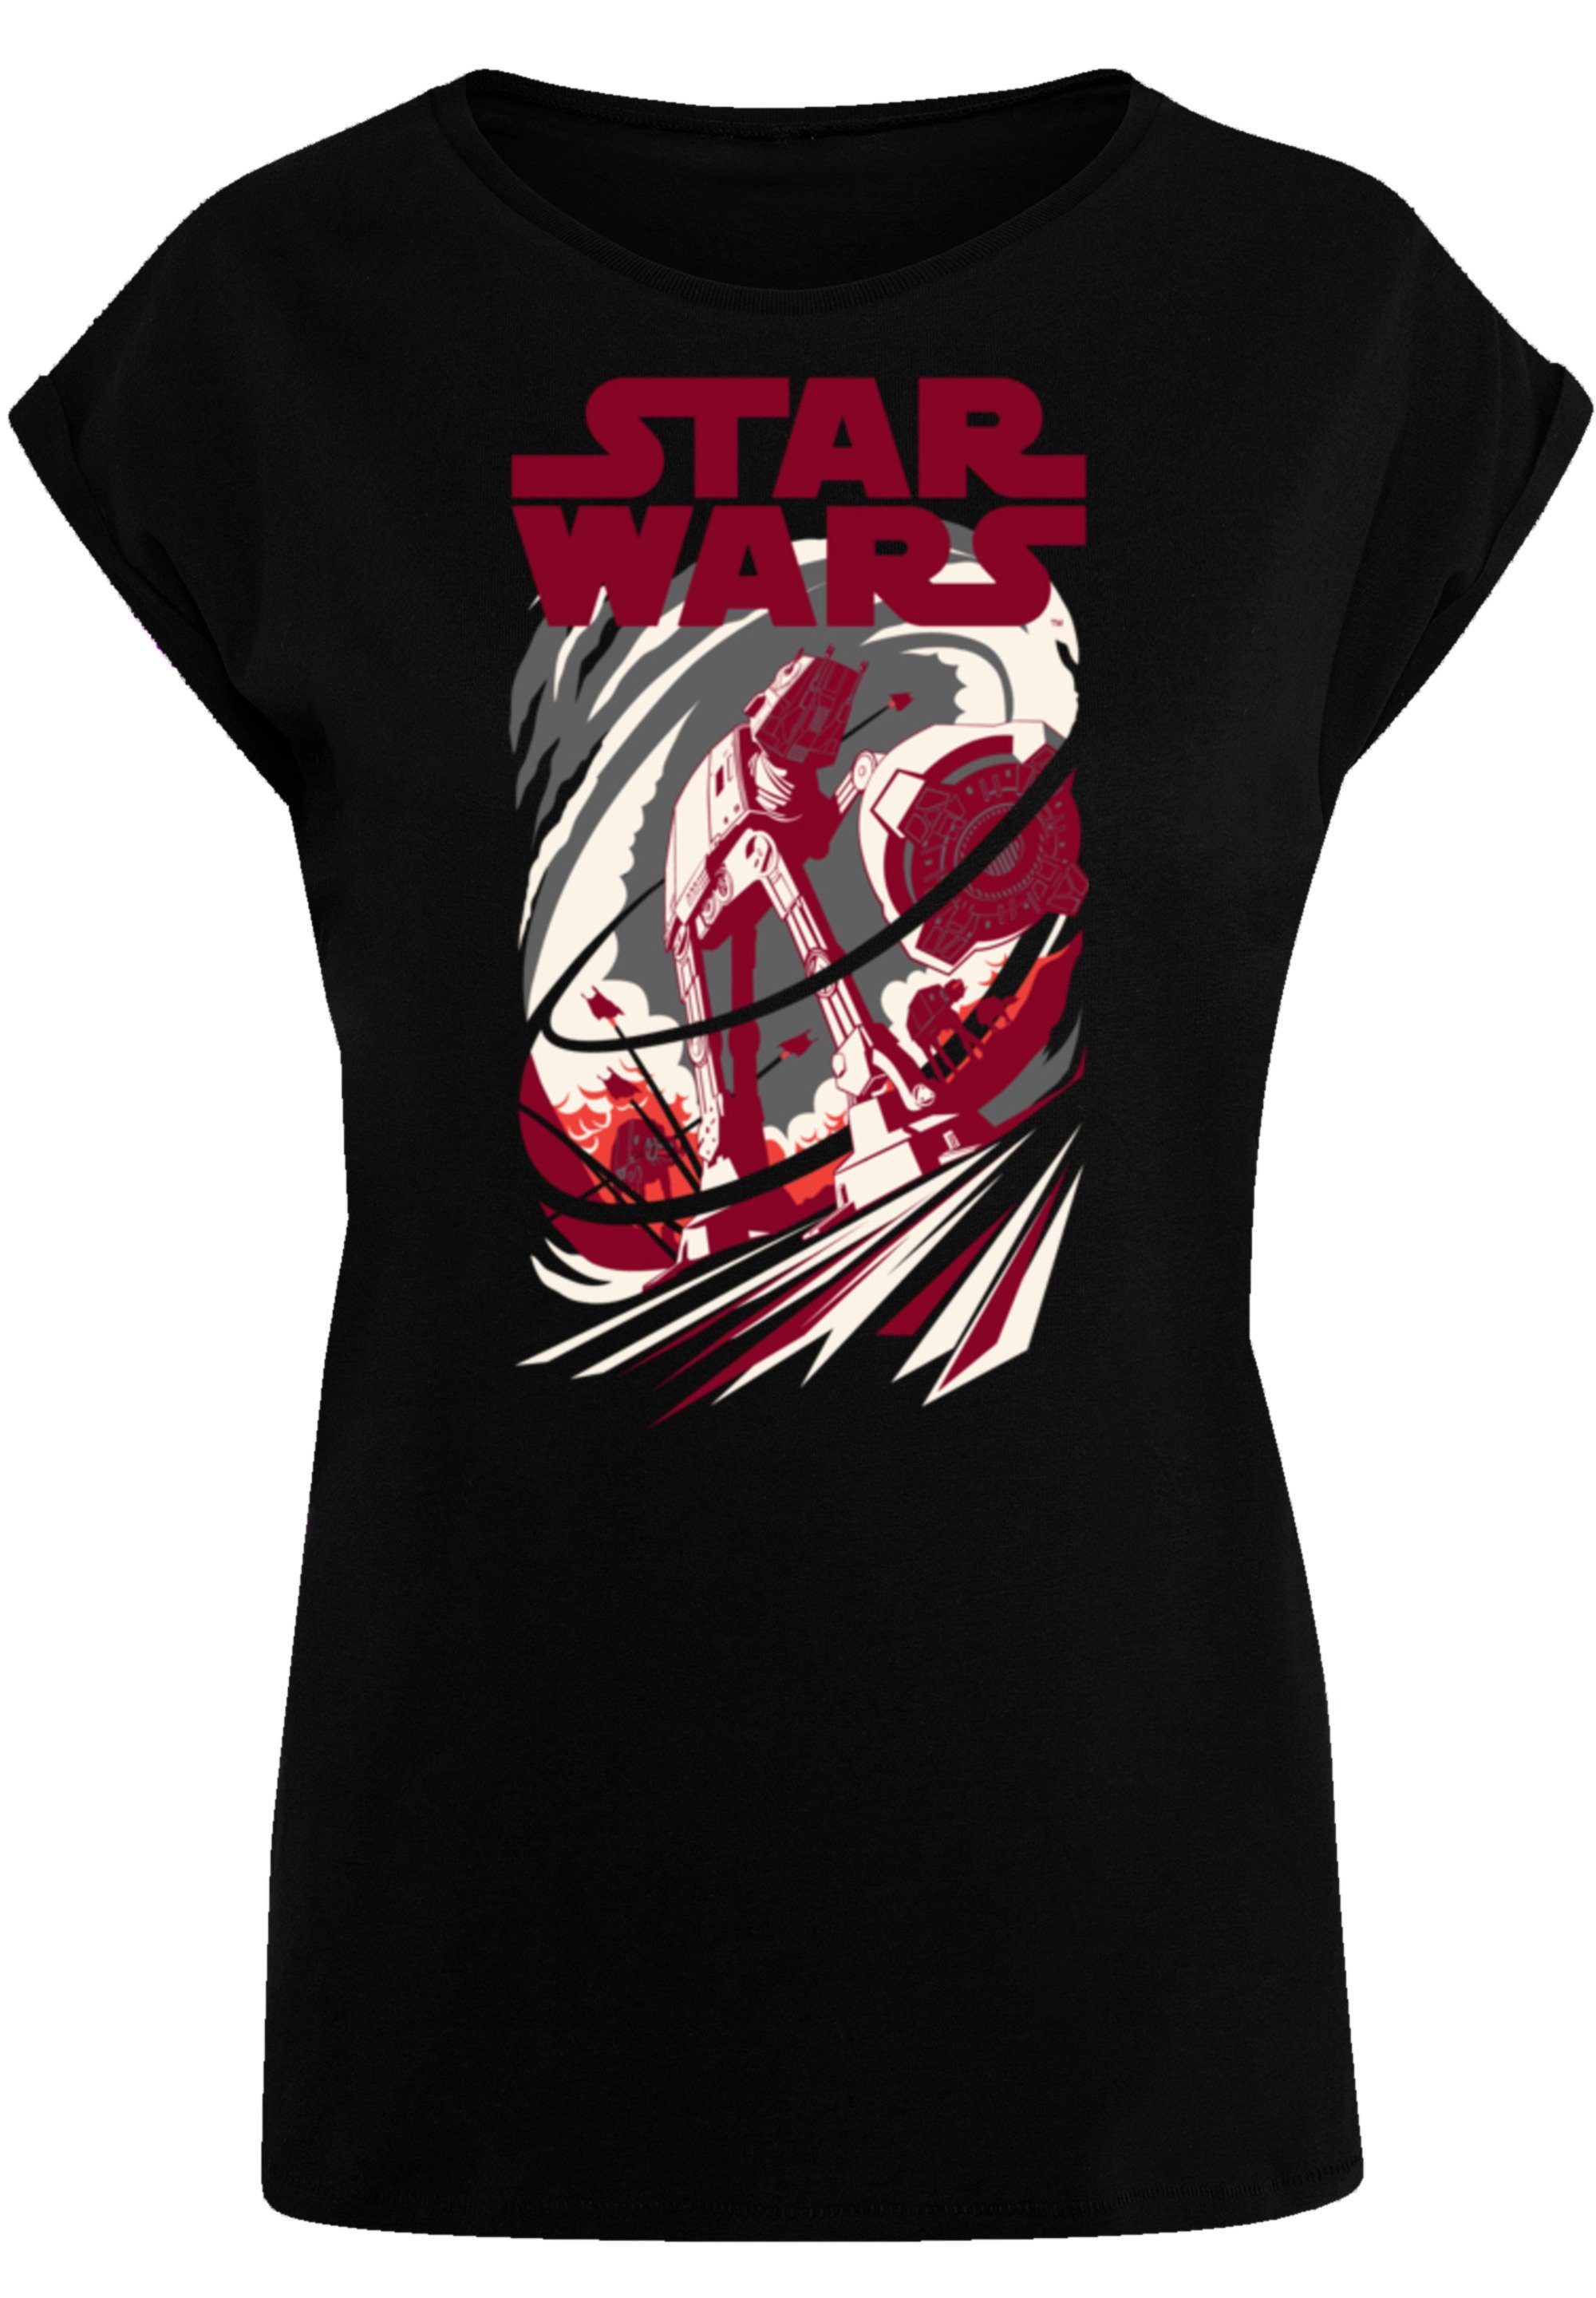 Qualität Premium F4NT4STIC T-Shirt Wars schwarz Star Turmoil